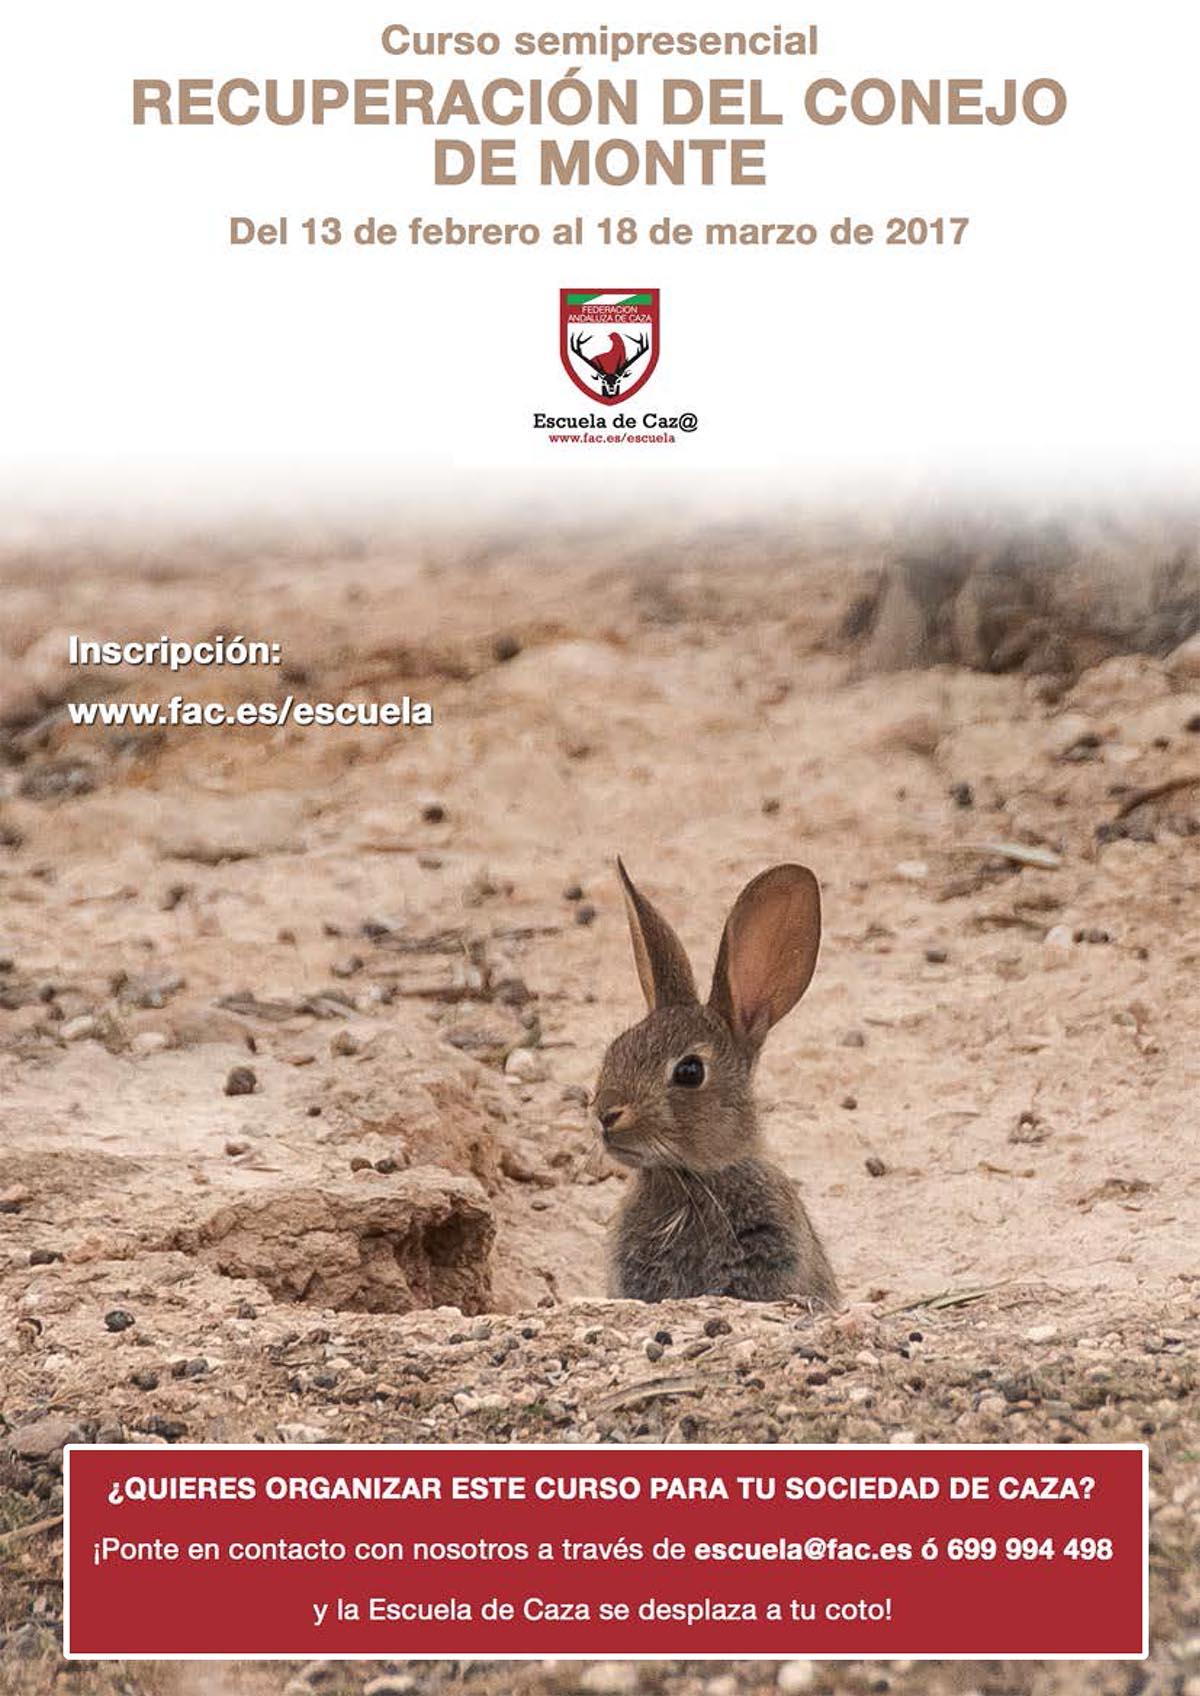 La Escuela de Caza de la FAC convoca un Curso para la Recuperación del Conejo de Monte del 13 de febrero al 18 de marzo